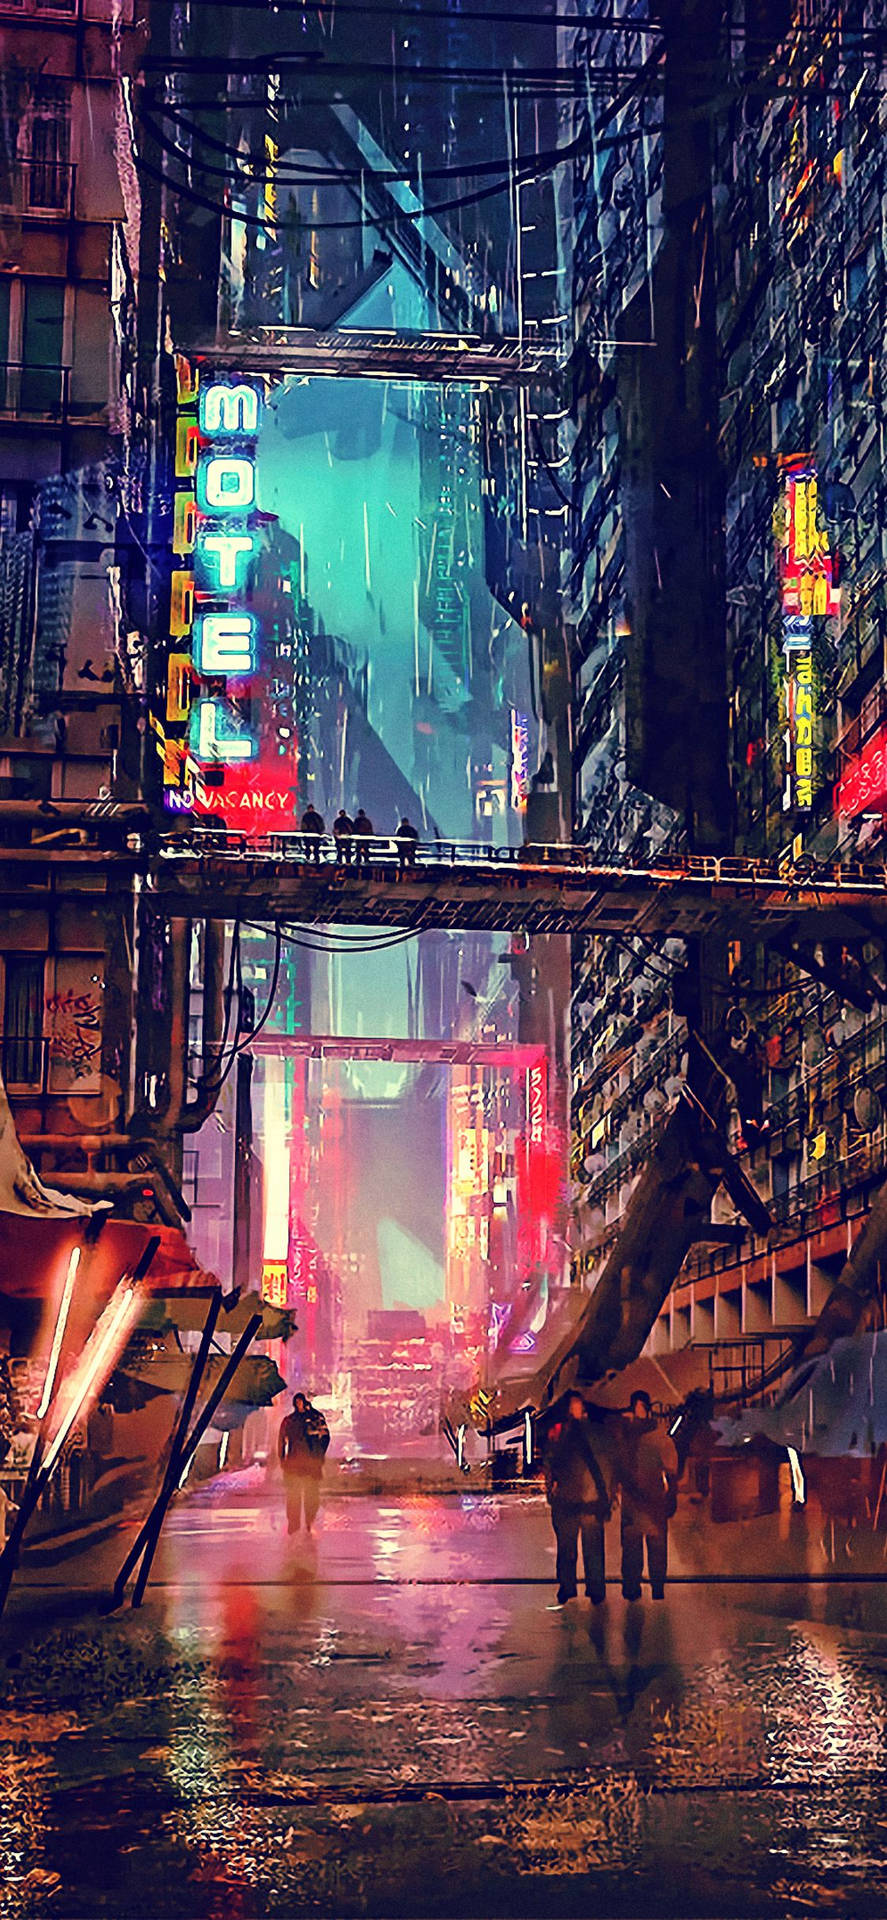 Futuristic Night City Cyberpunk 2077 Iphone